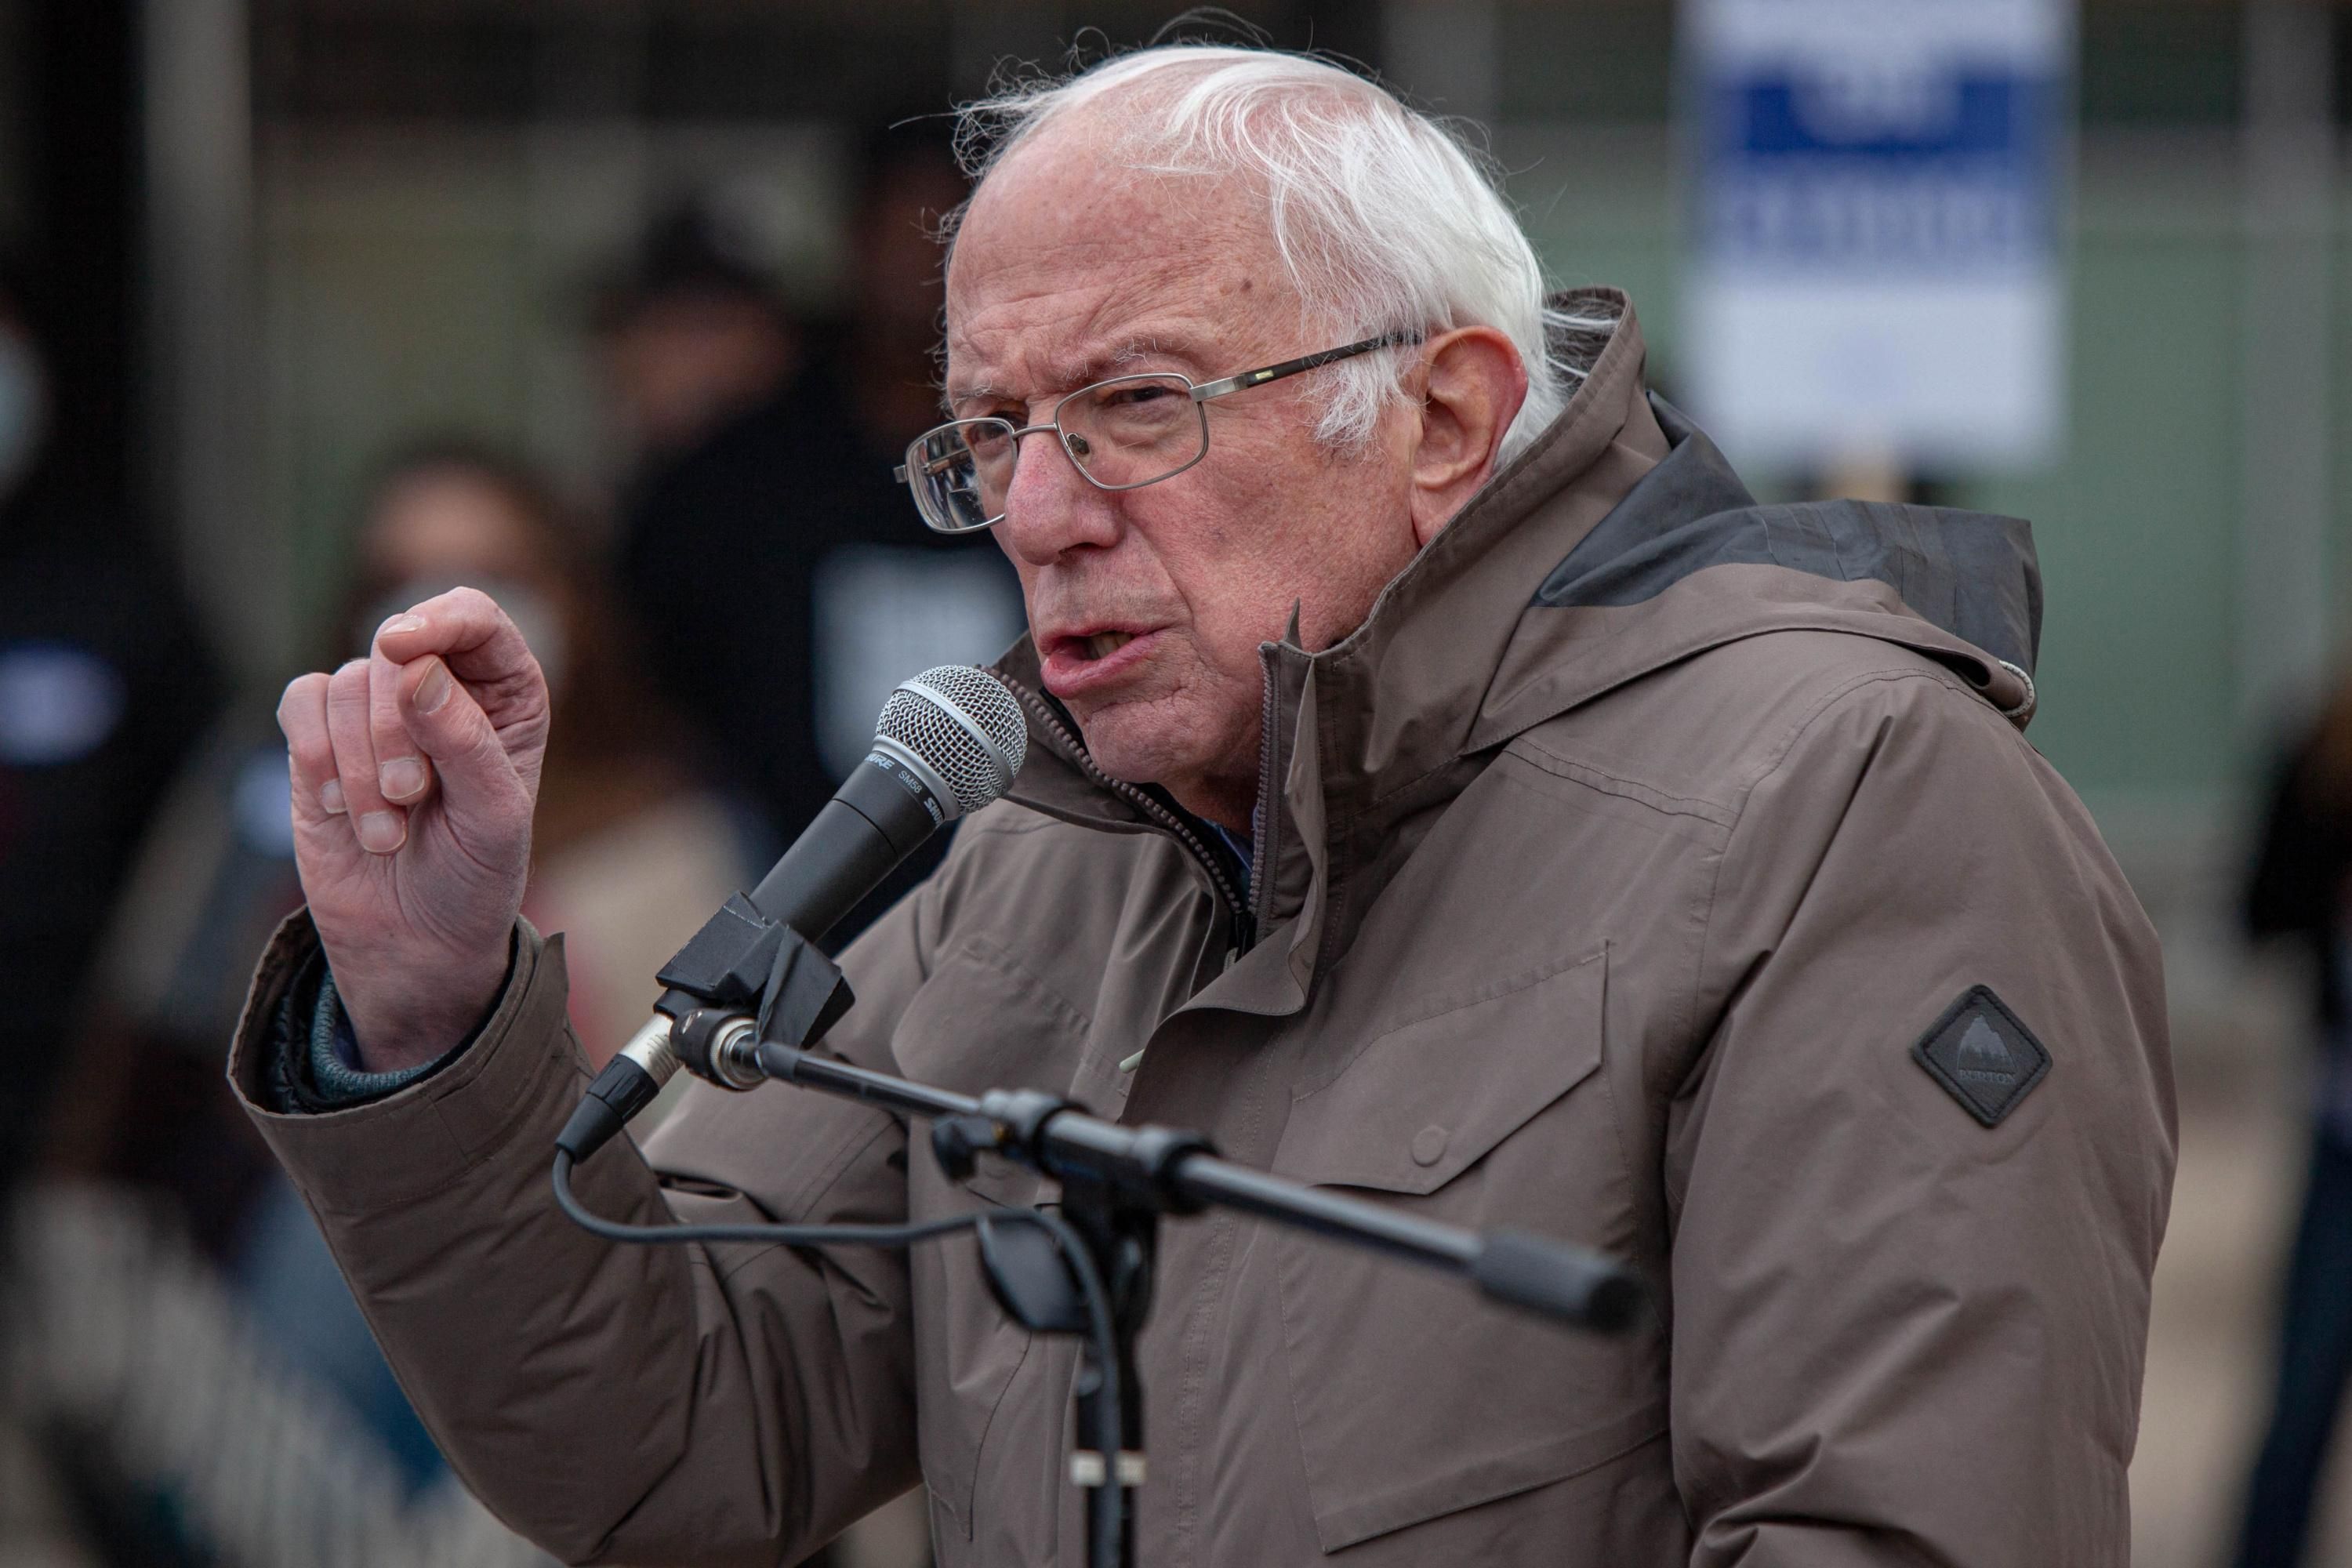 Sen. Bernie Sanders speaks to striking workers